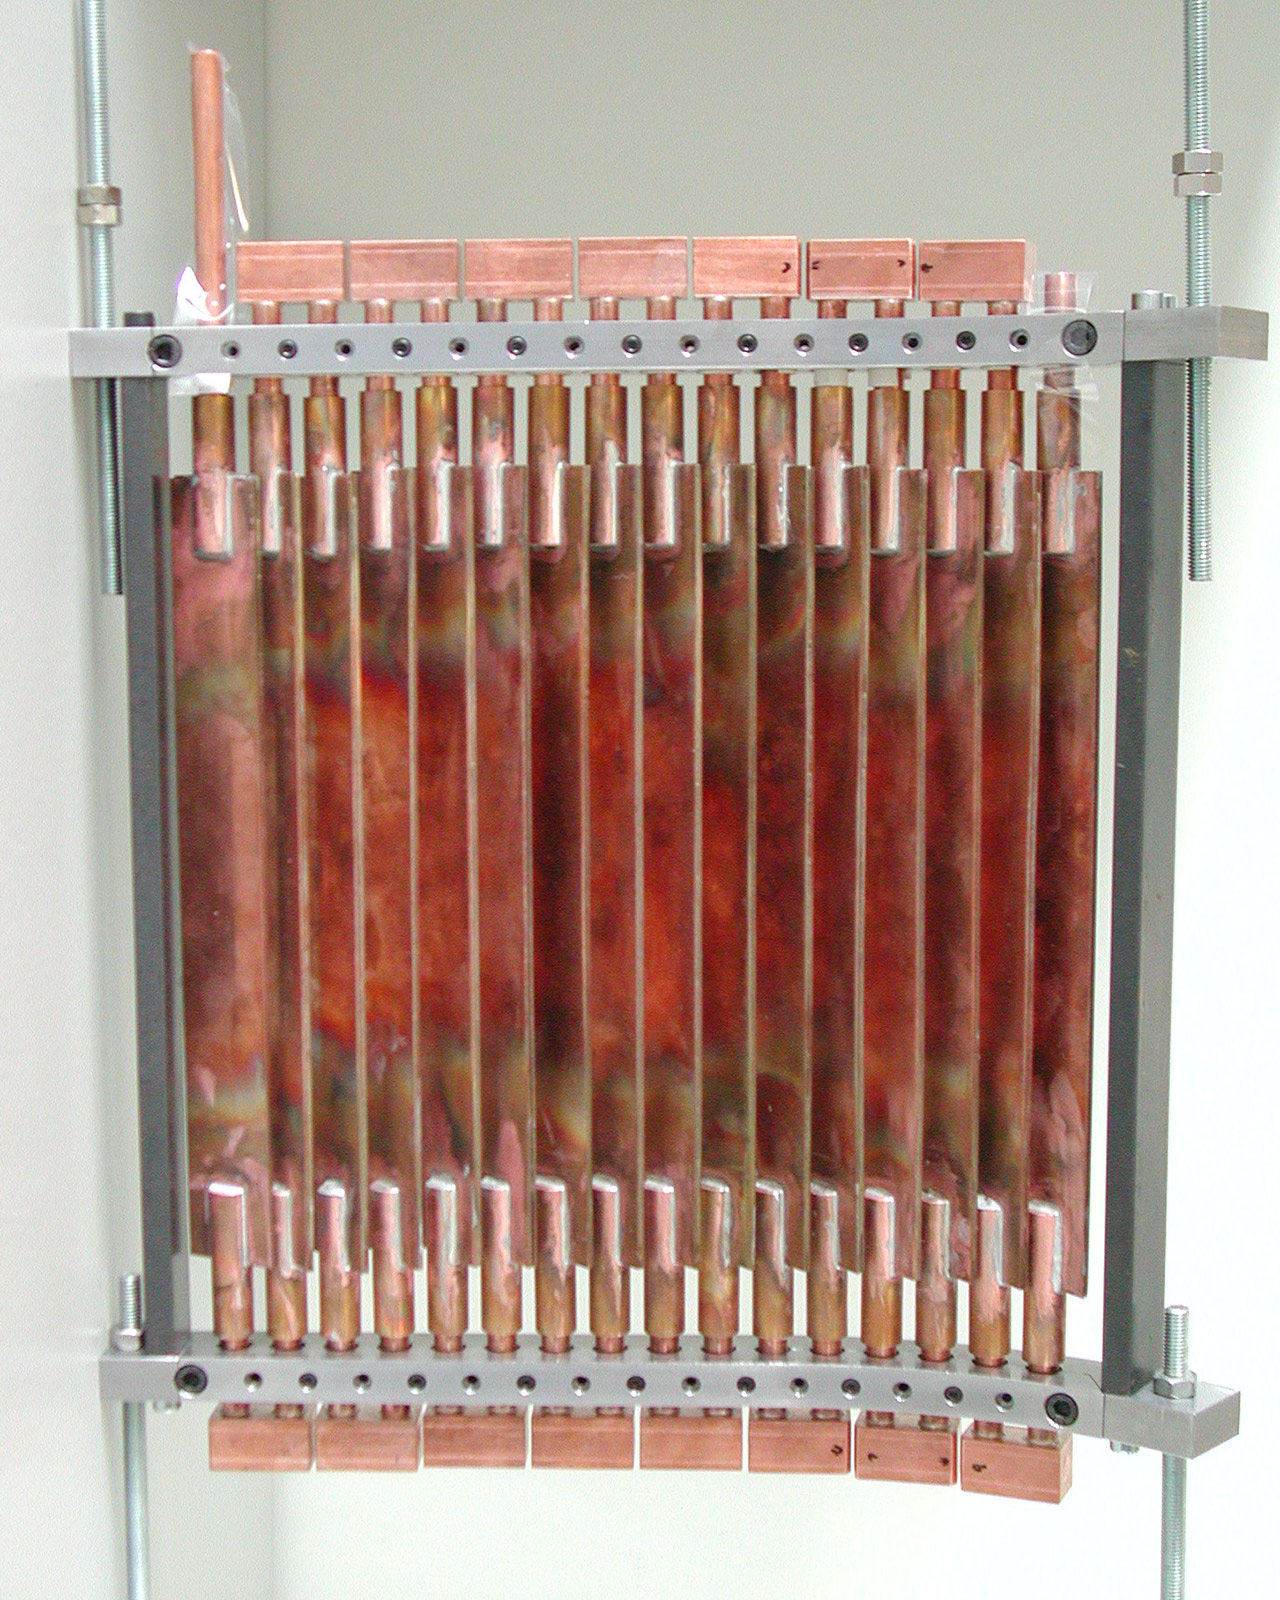 Elektromagnetischer Partikelfilter für die Vakuumbogenbeschichtung.